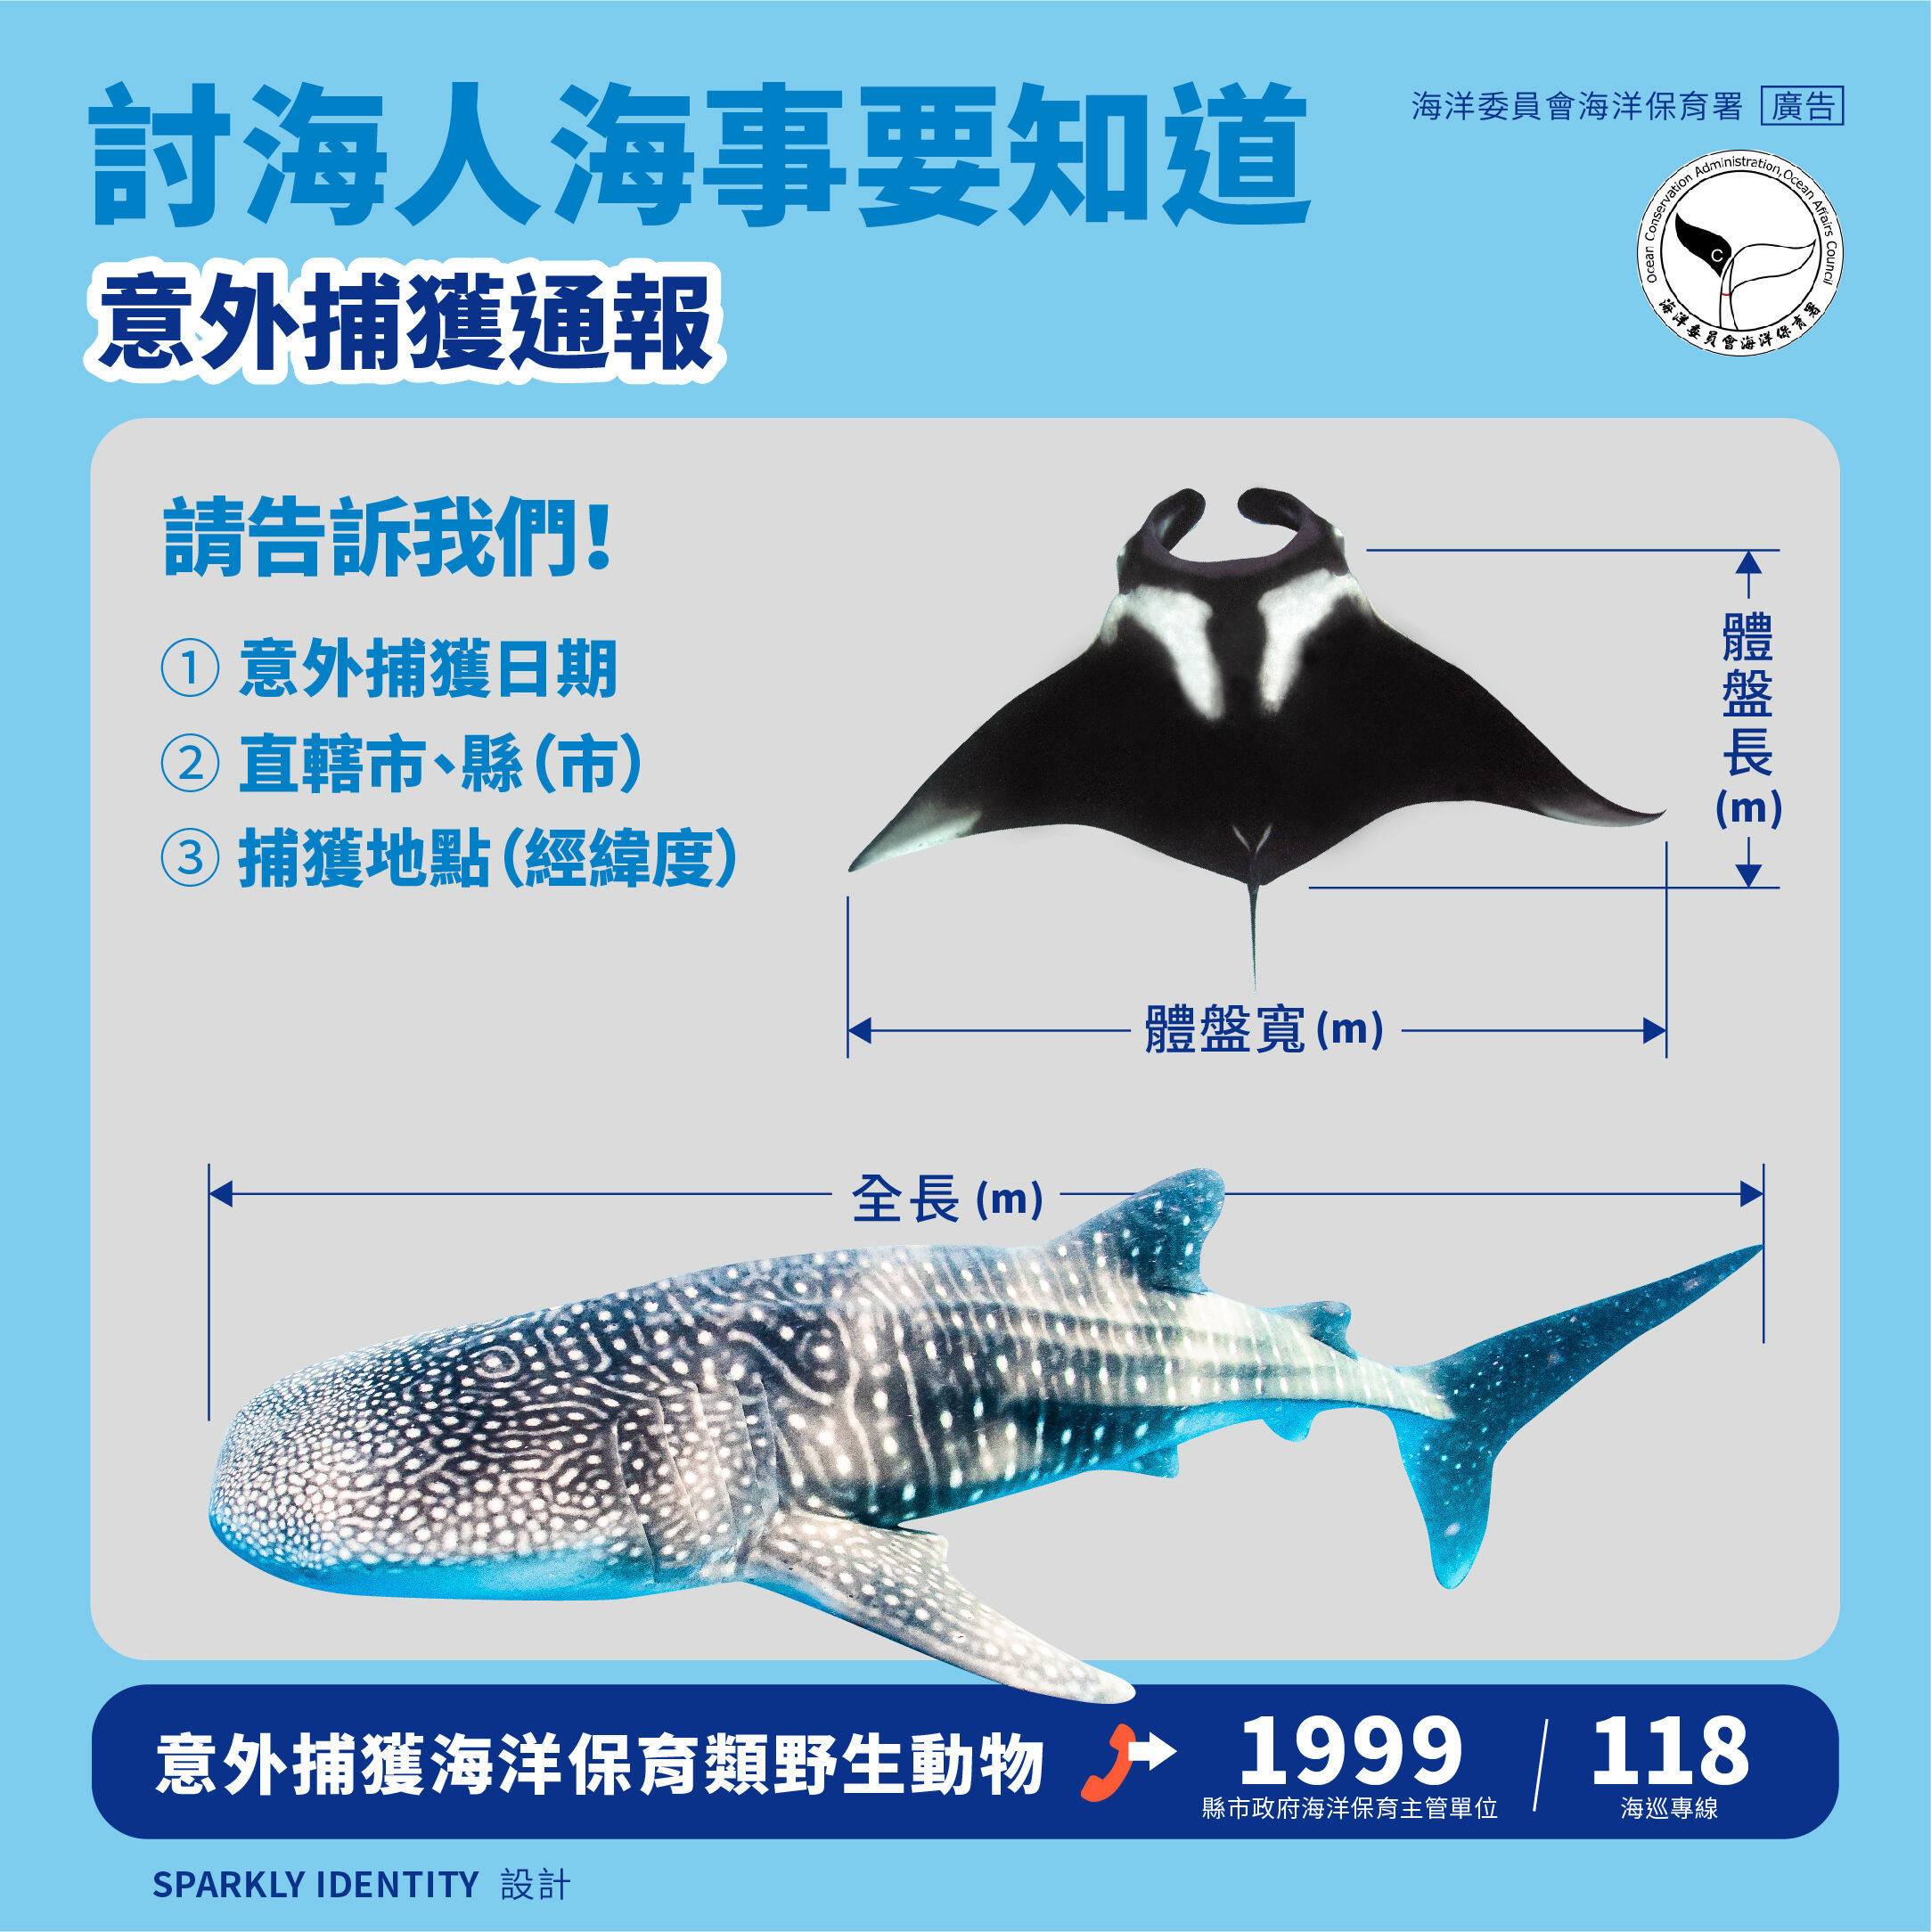 海洋保育類野生動物 臺灣軟骨魚類保育現況 海洋委員會海洋保育署全球資訊網